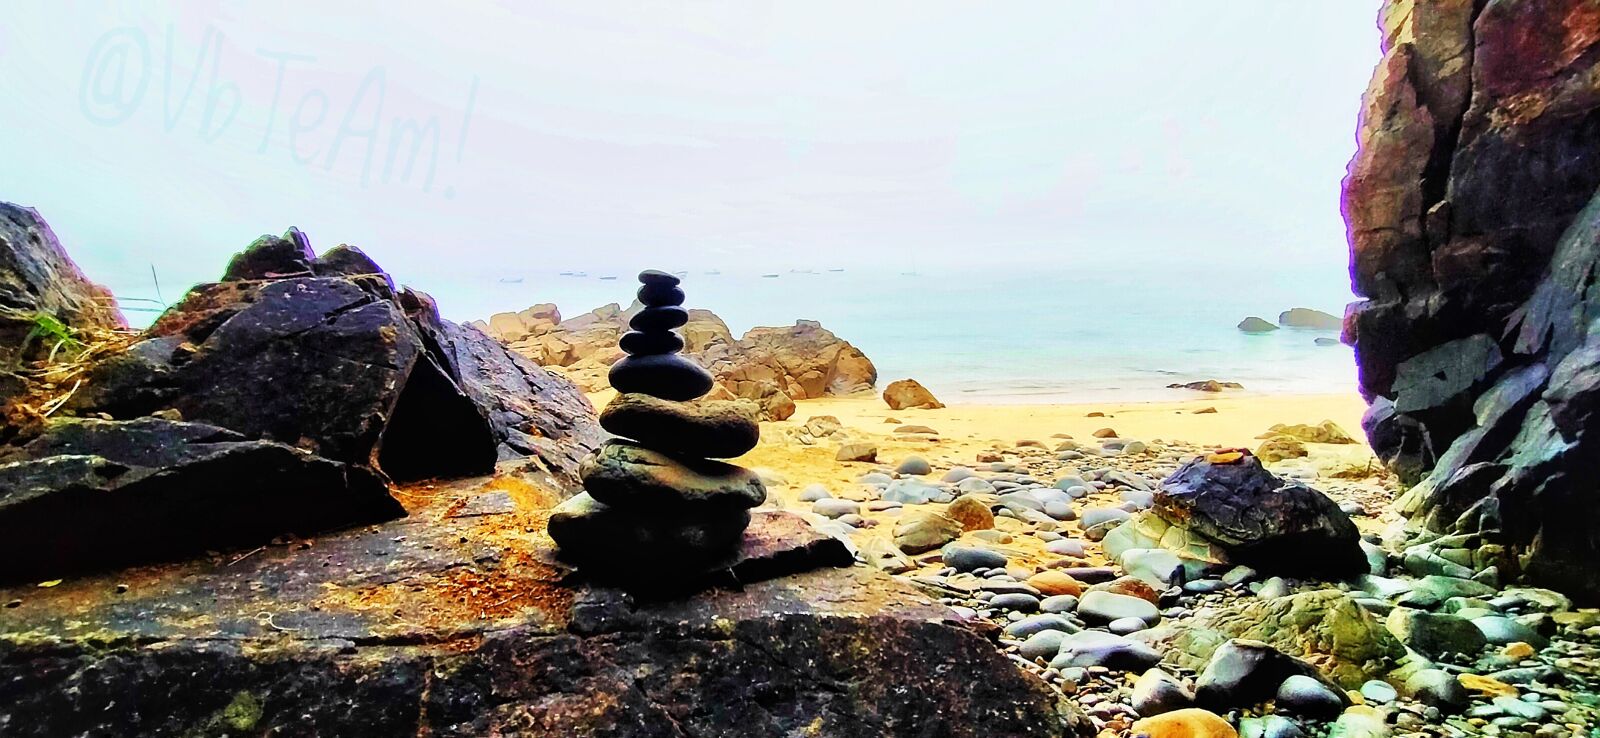 OPPO A9 2020 sample photo. Zen, yoga, beach photography